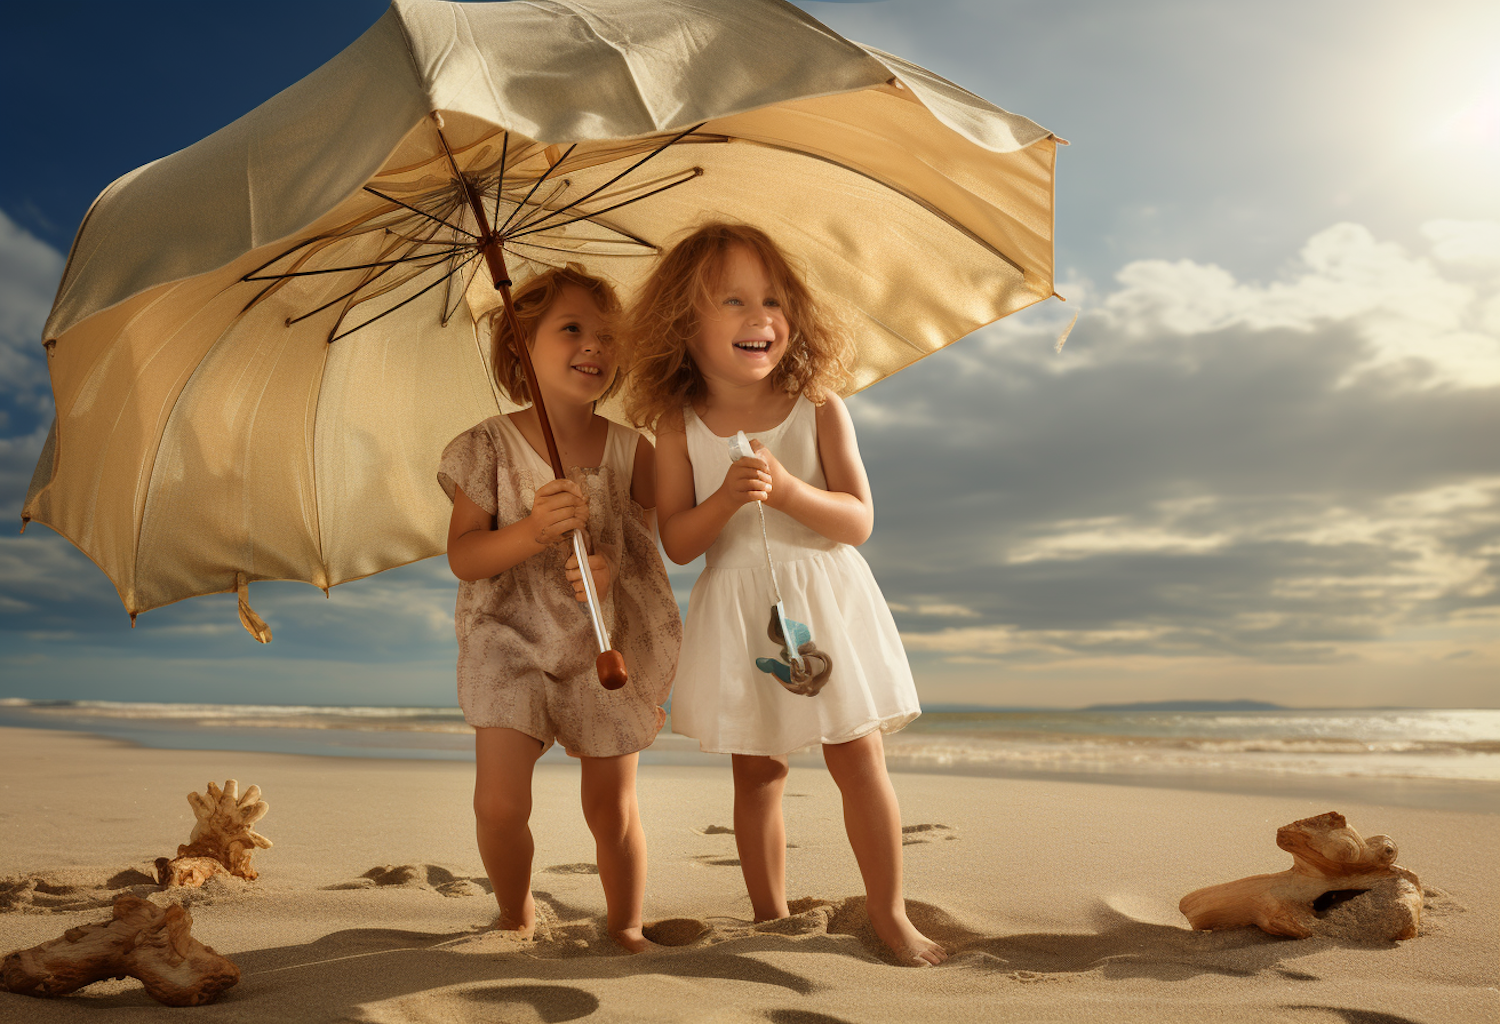 Serene Playtime under the Golden Umbrella